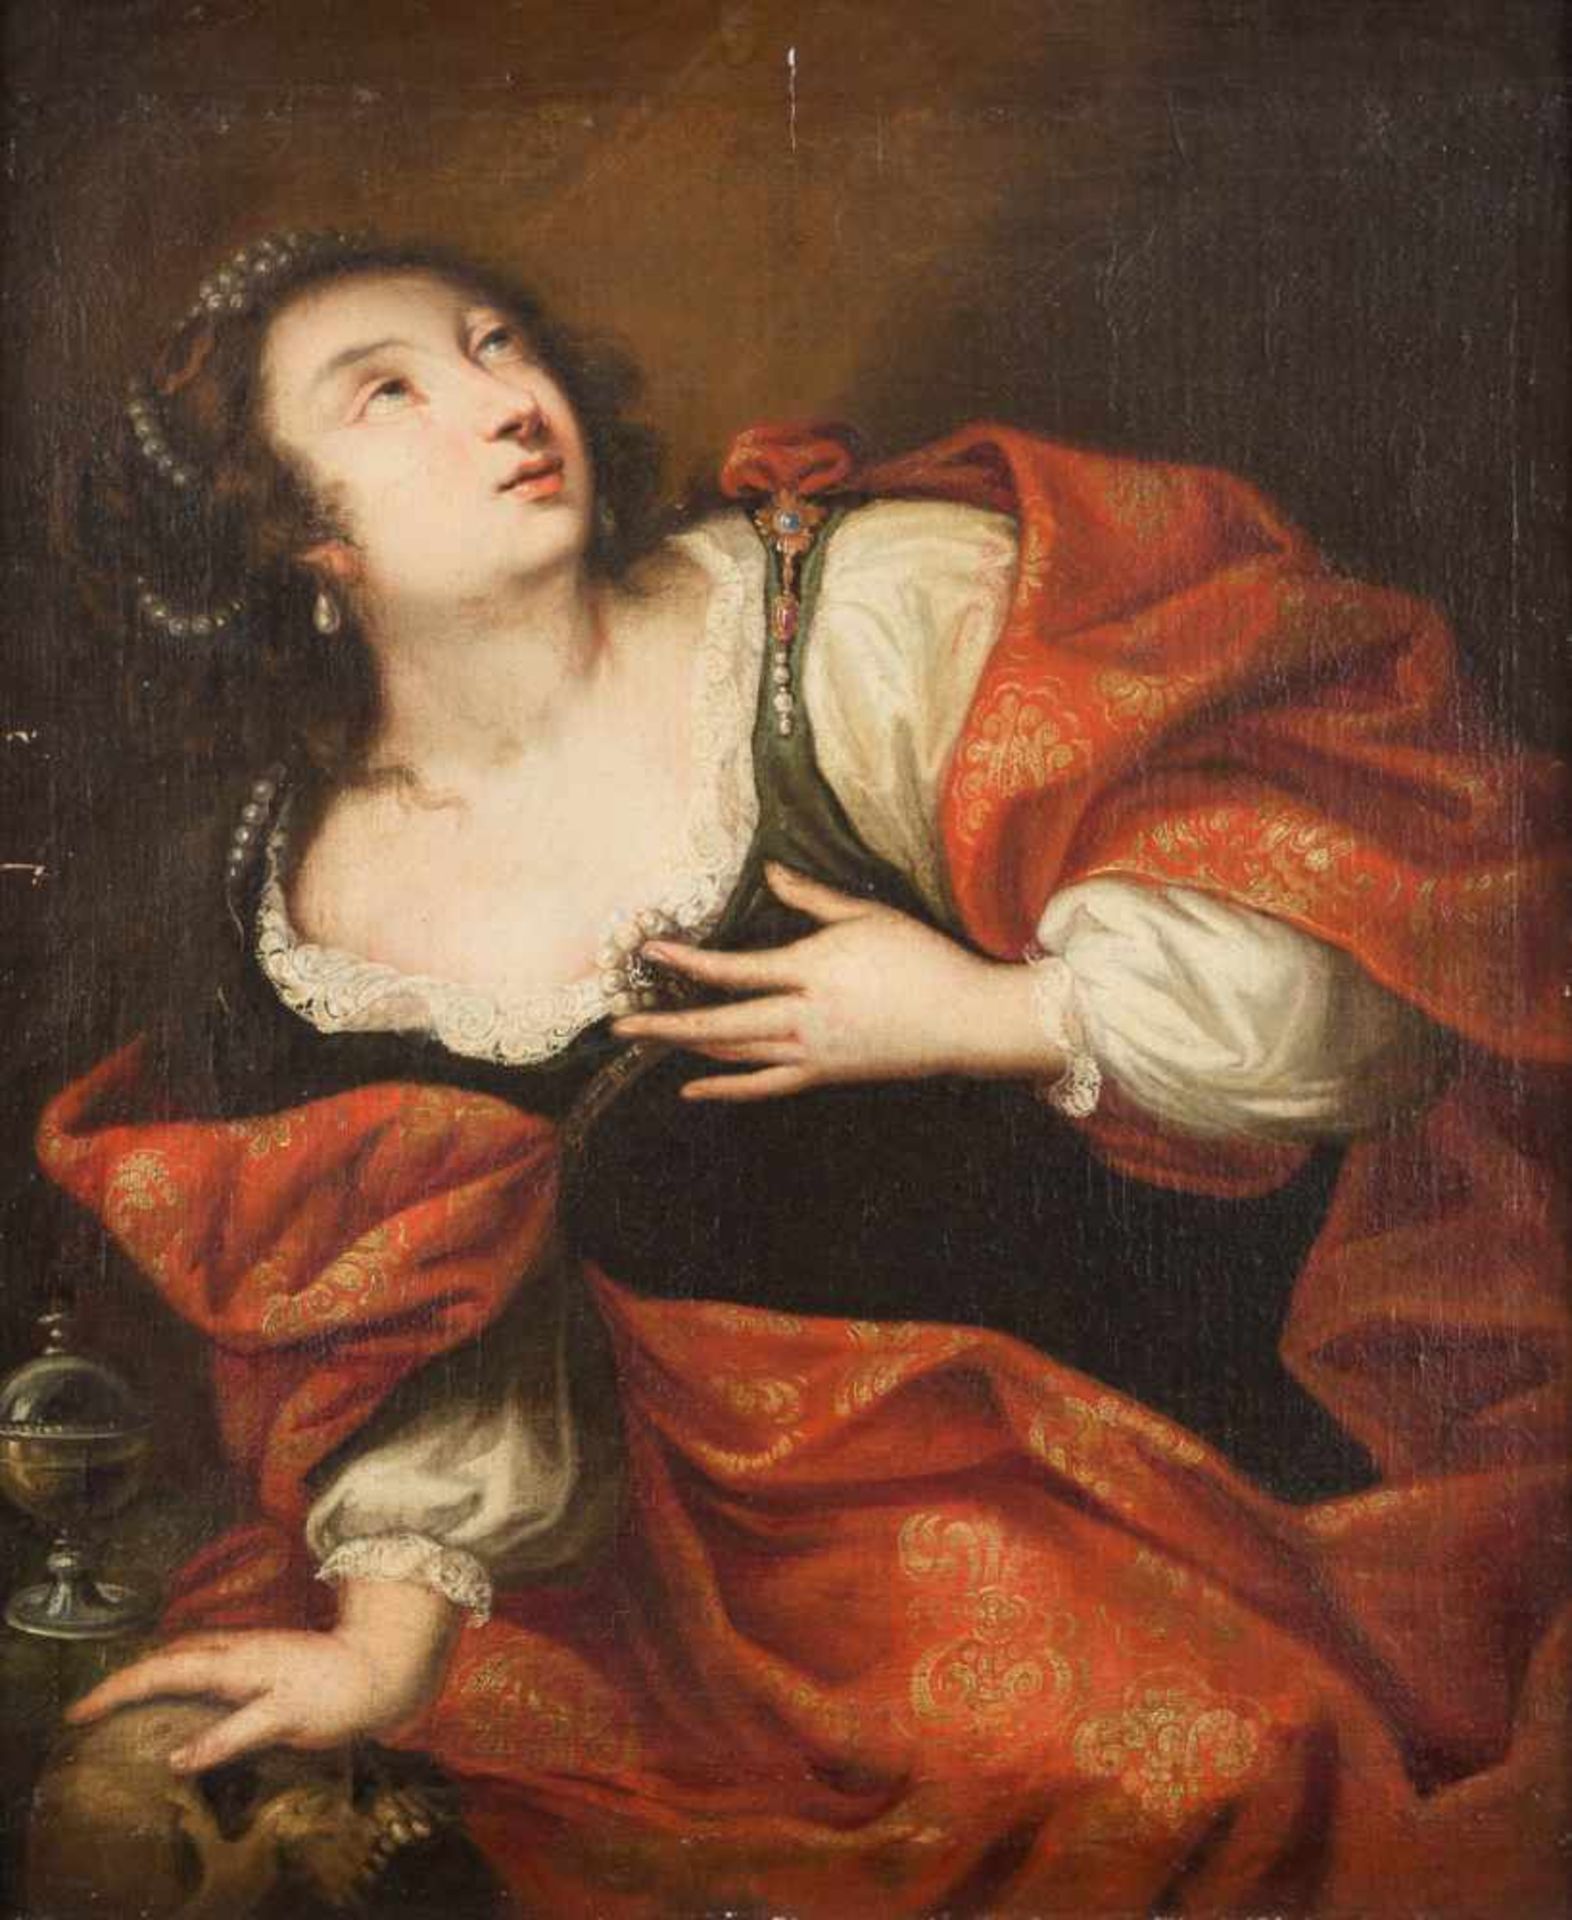 JAN COSSIERS (WERKSTATT/SCHULE)1600 Antwerpen - 1671 EbendaMARIA MAGDALENA Öl auf Leinwand (